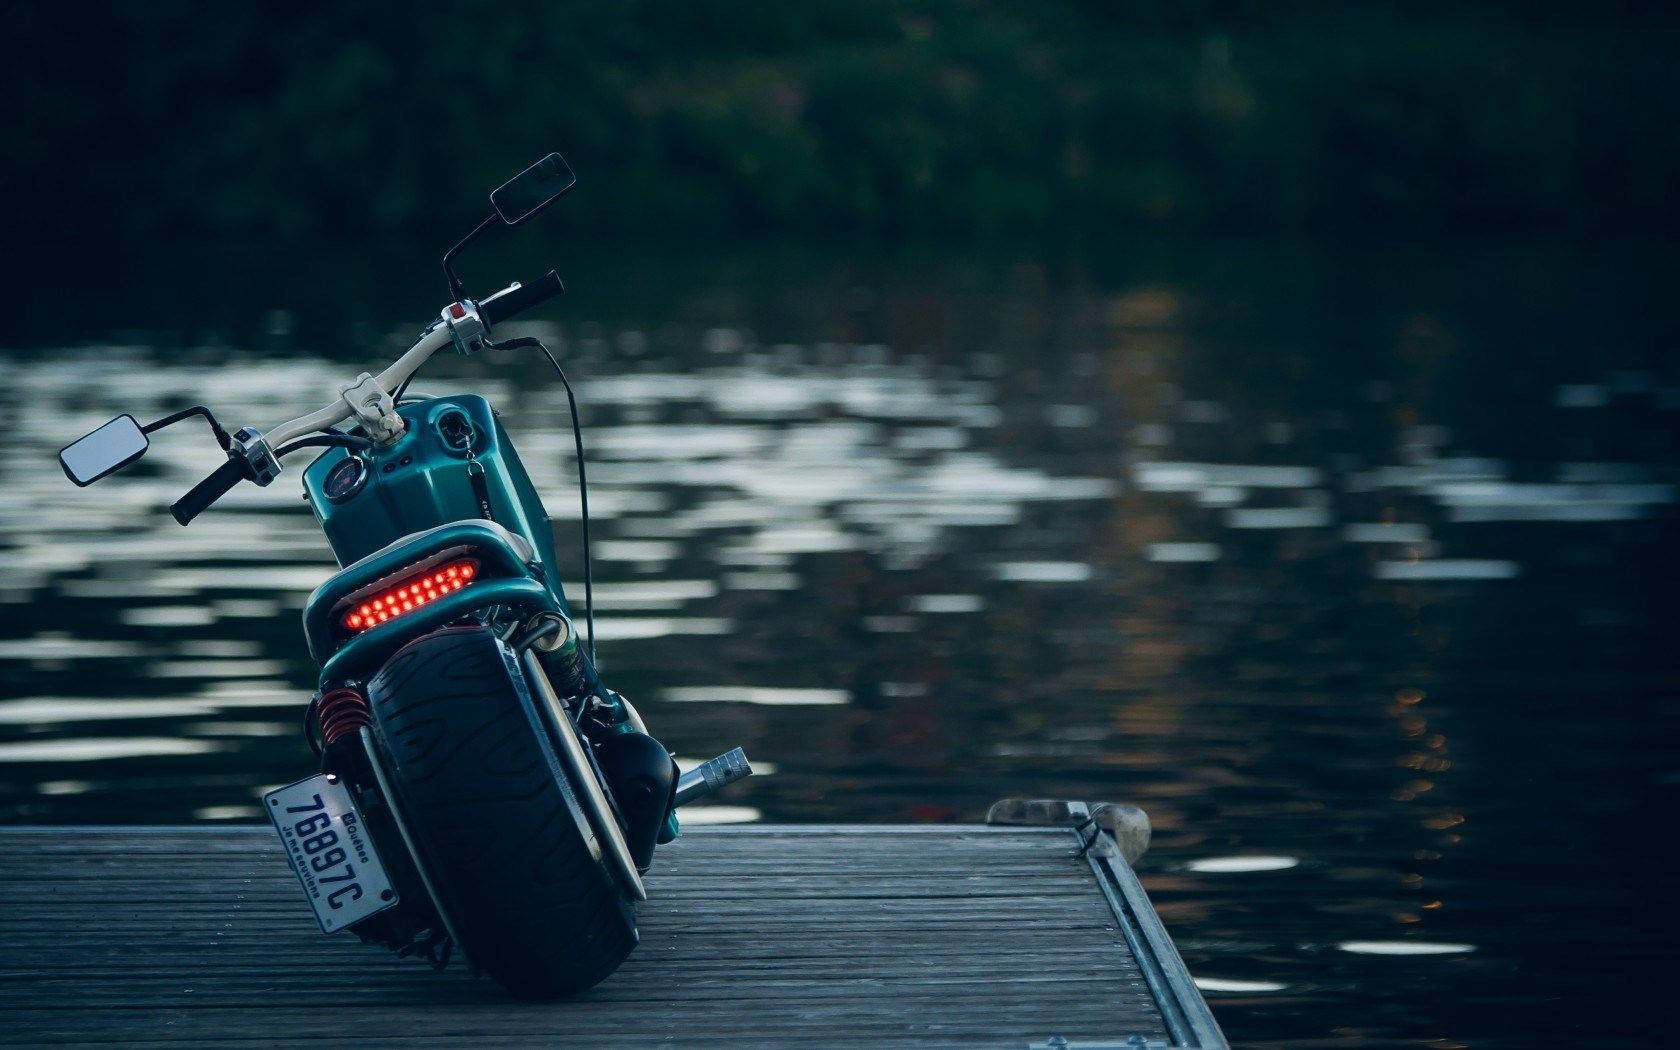 Hd Motorcycle Near Water Wallpaper